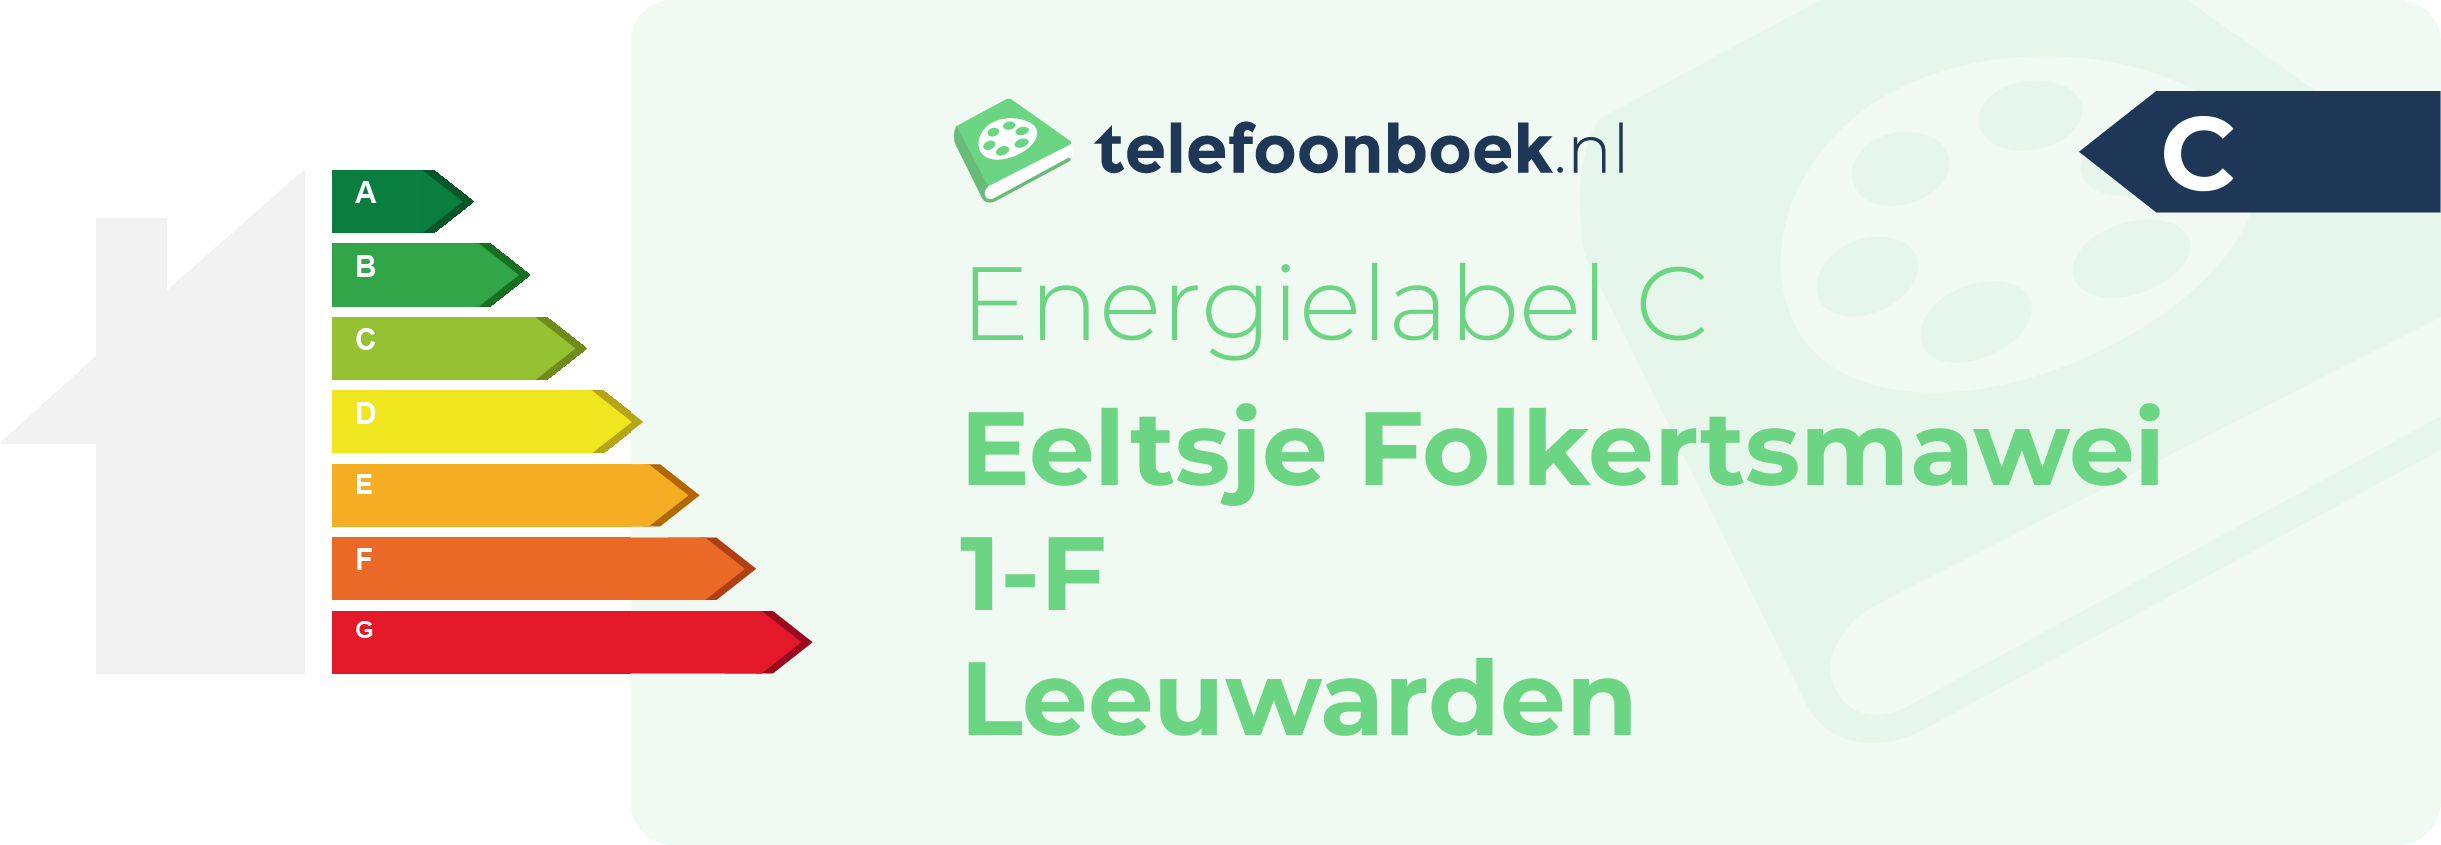 Energielabel Eeltsje Folkertsmawei 1-F Leeuwarden